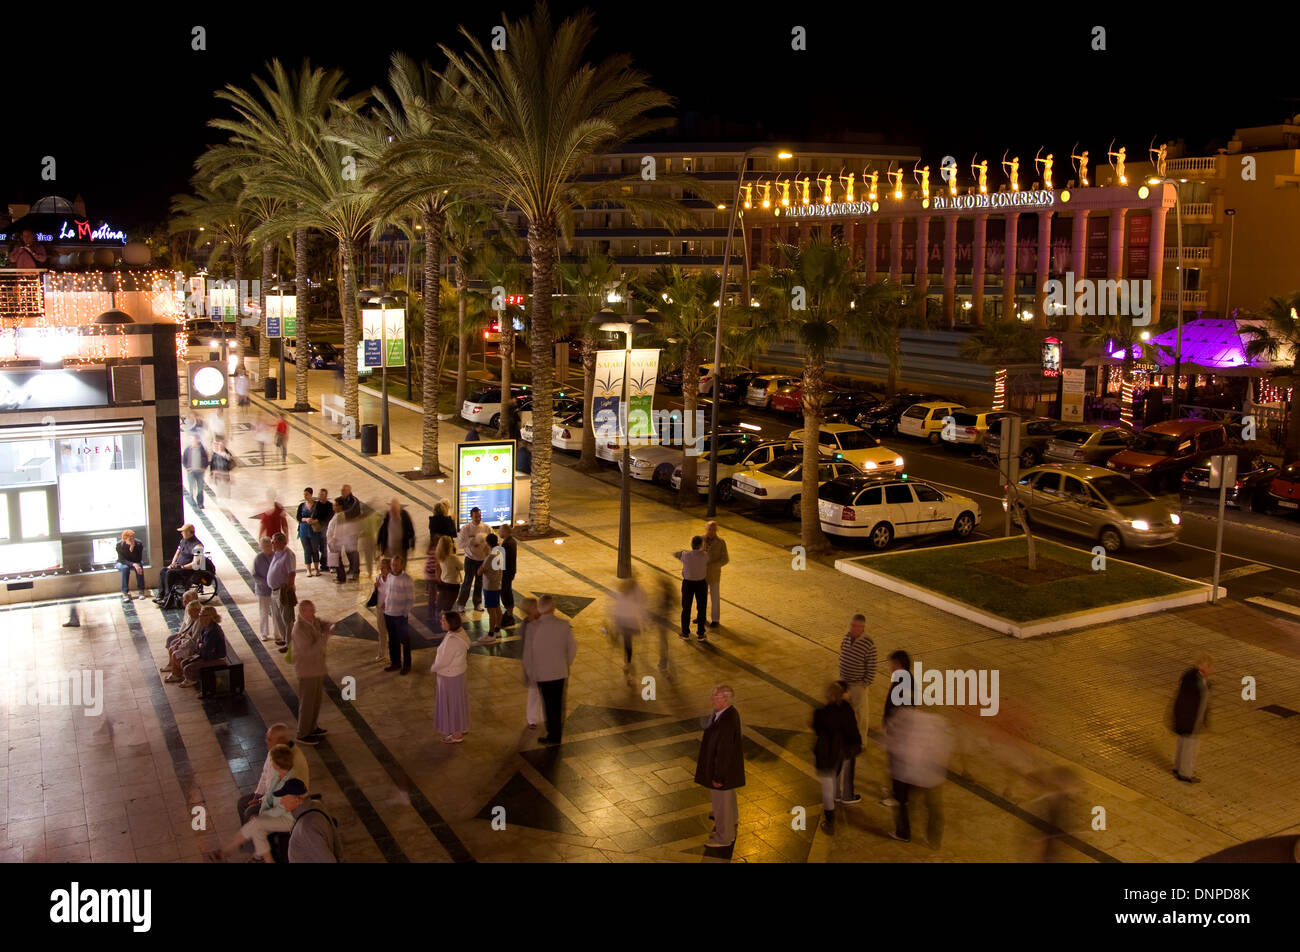 Il centro dello shopping e fontana illuminata di notte, Playa de Las Americas, Tenerife, Spagna Foto Stock